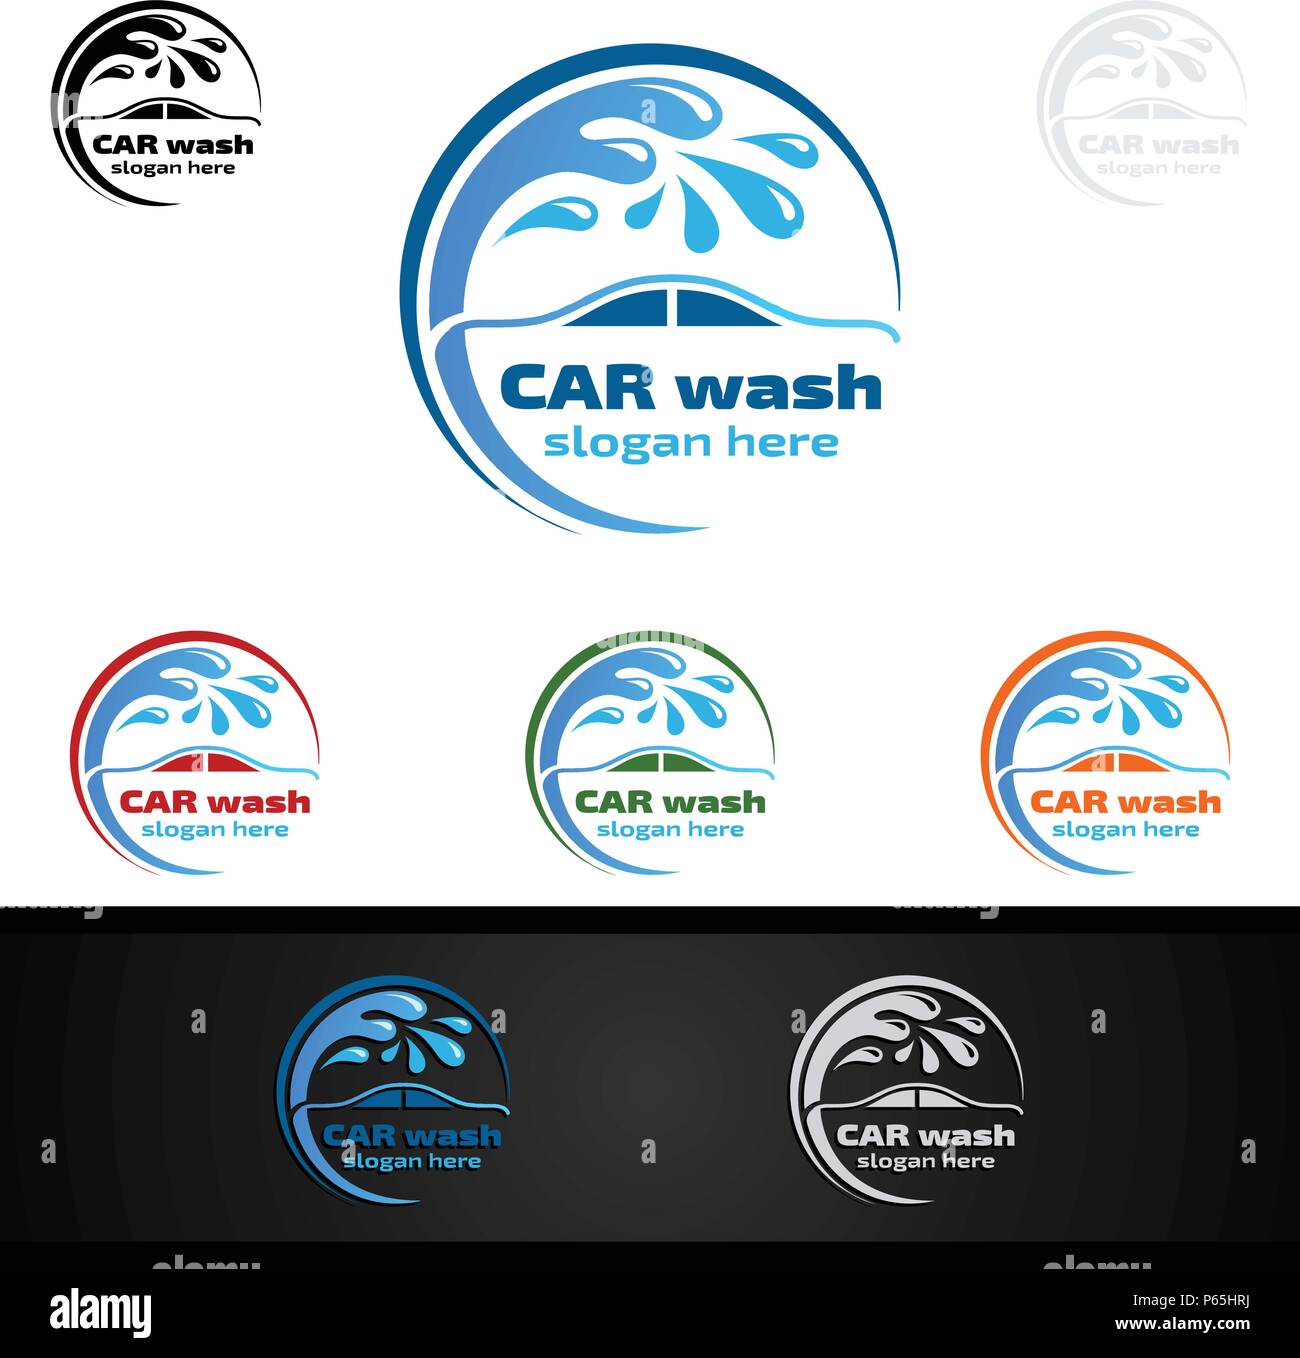 Logo de lavage de voiture, lavage et nettoyage de voiture, vecteur de conception de logo Illustration de Vecteur